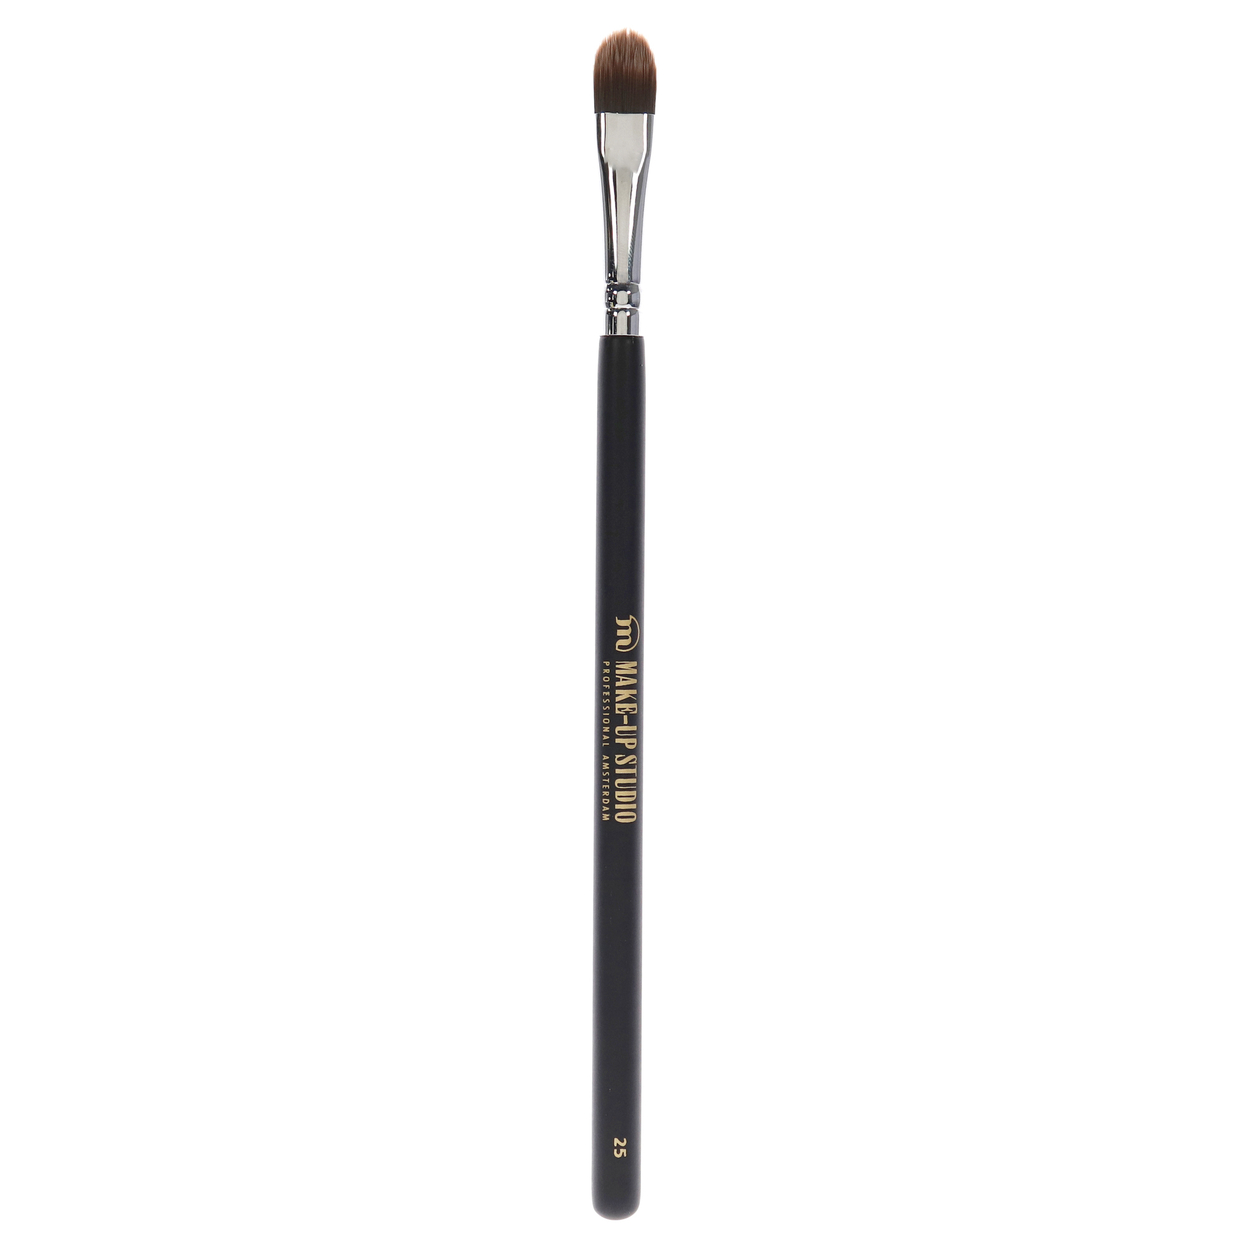 Make-Up Studio Eyeshadow Camouflage Age Nylon Brush - 25 1 Pc